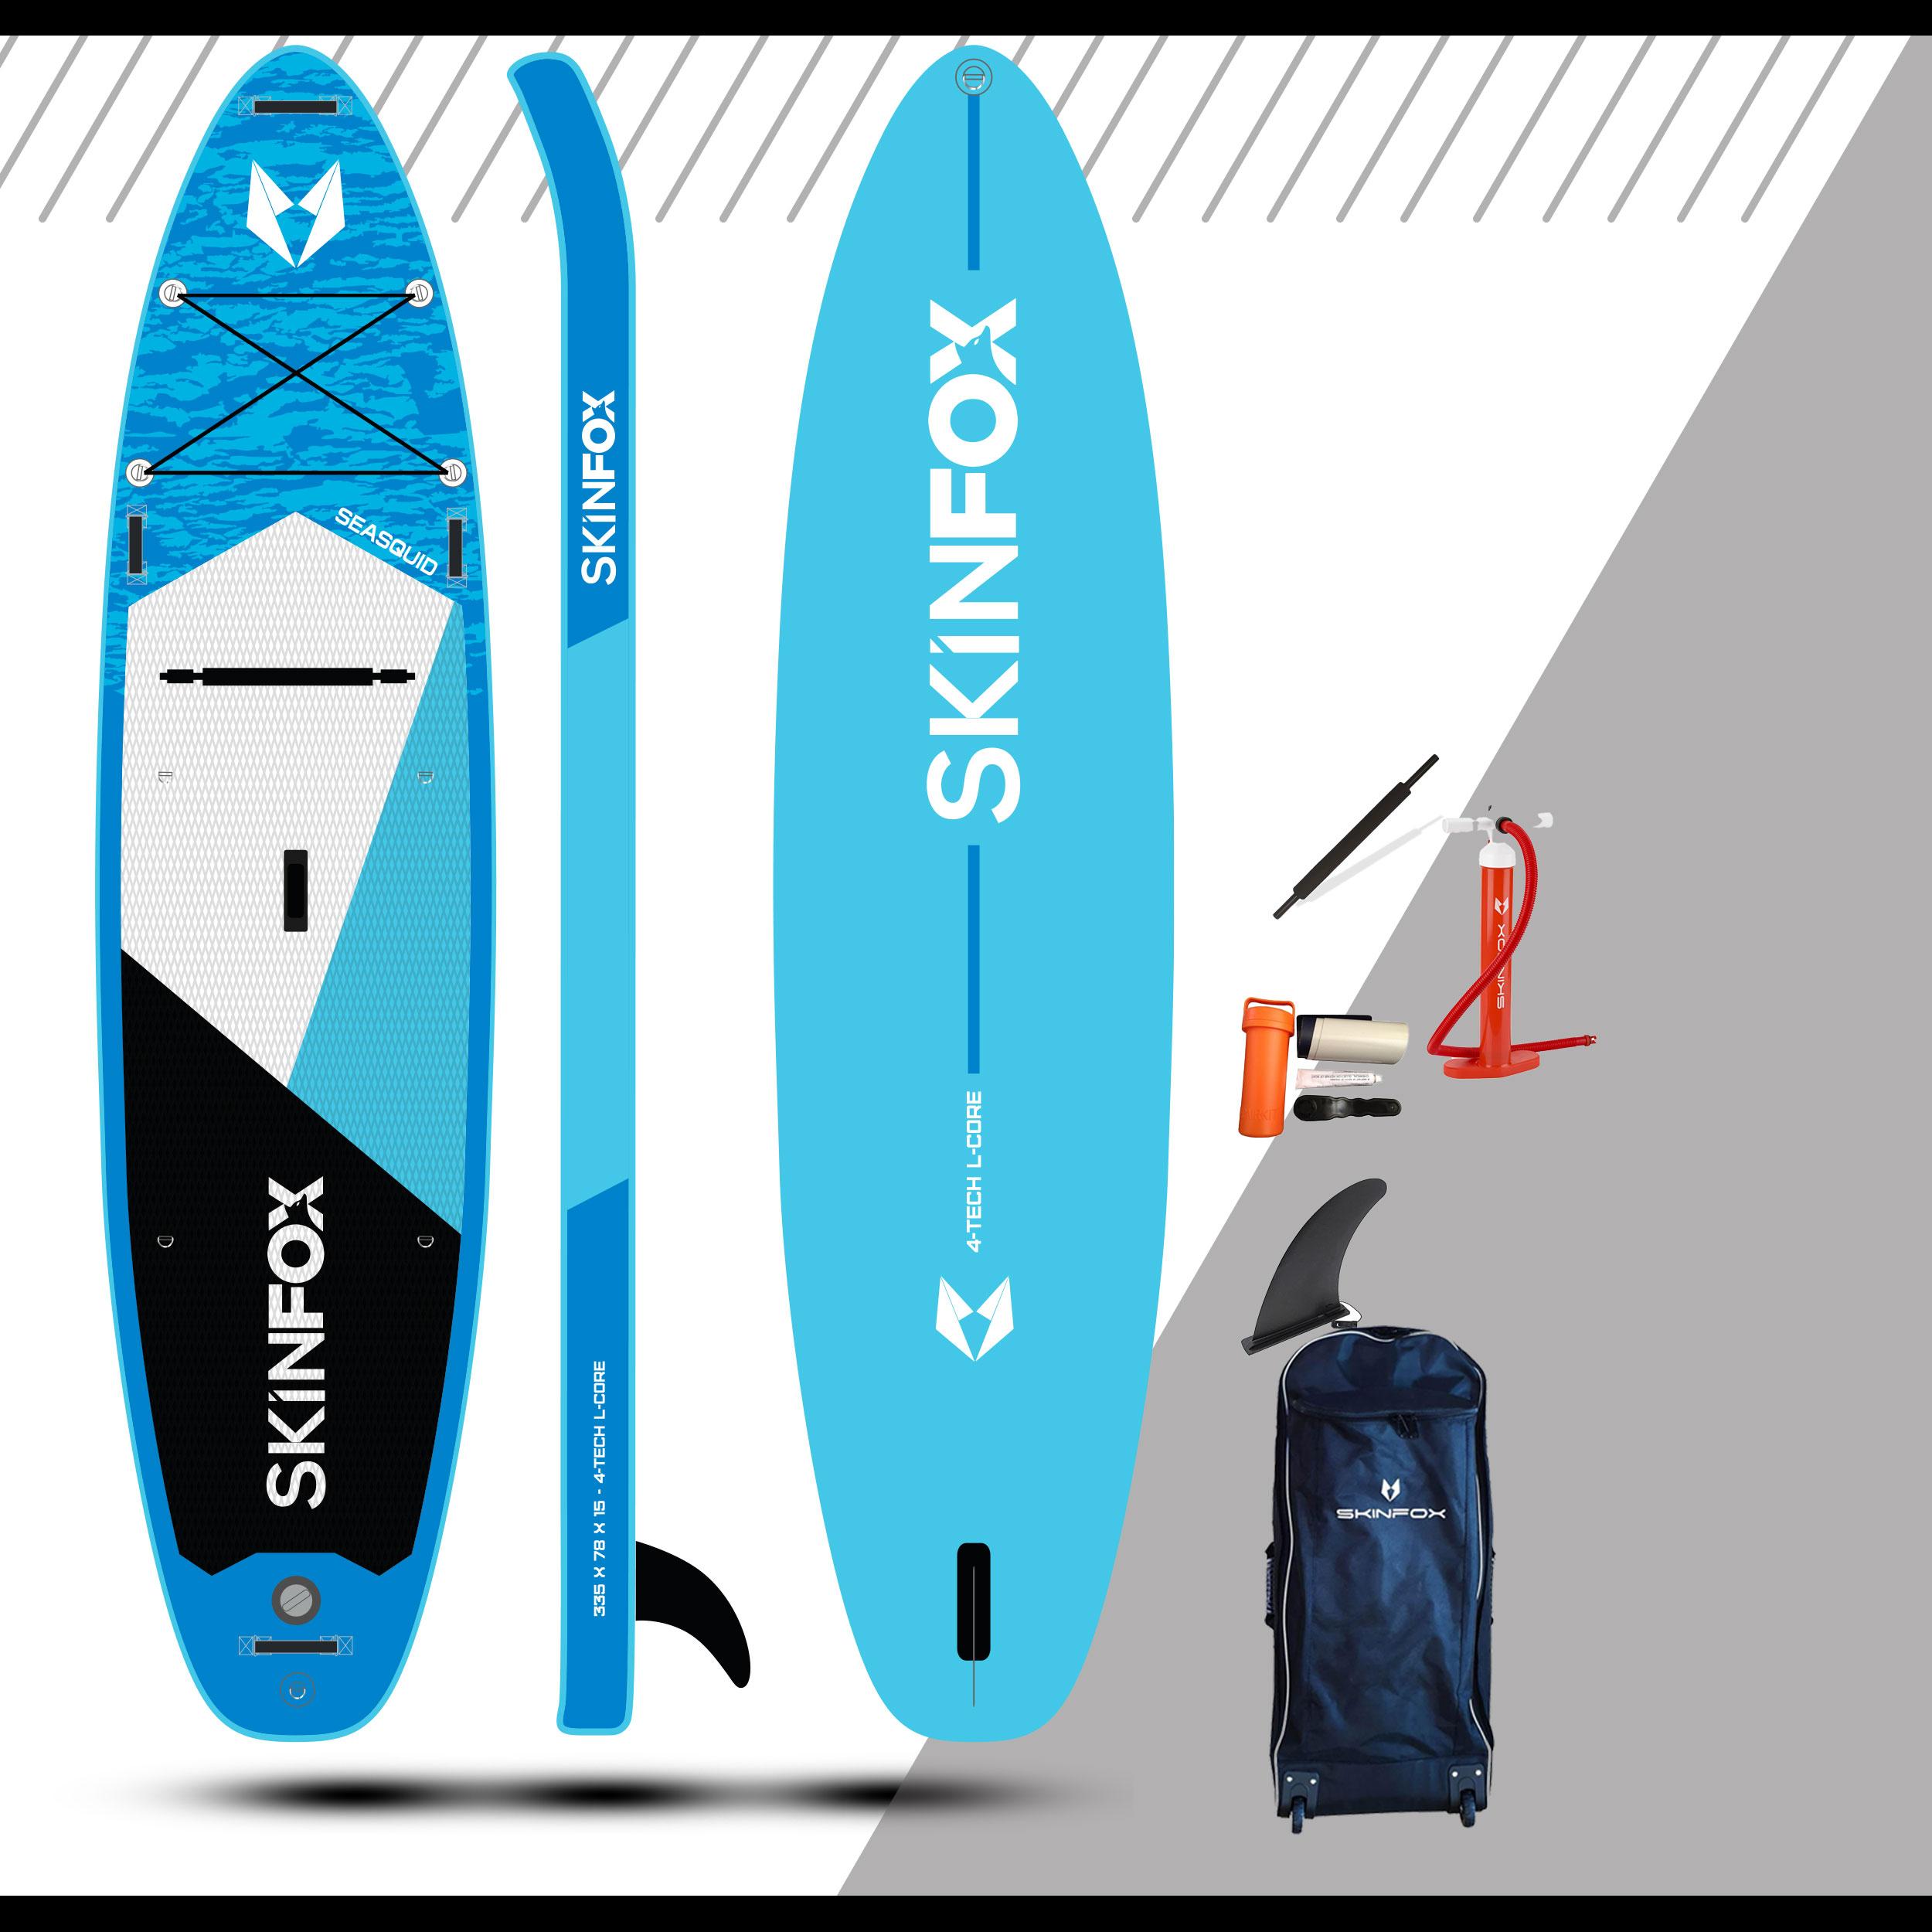 ✓Standup Paddleboard ✓Nur 9 PSI Luftdruck ✓Kajakoption ✓Einzeln oder im SET  ✓ab Lager lieferbar ✓Top BeratungSKINFOX SEASQUID CARBON-SET (335x78x15)  4-TECH L-CORE SUP Paddelboard hellblau von HERSTELLER Skinfox -  Familienunternehmen aus Bayern für